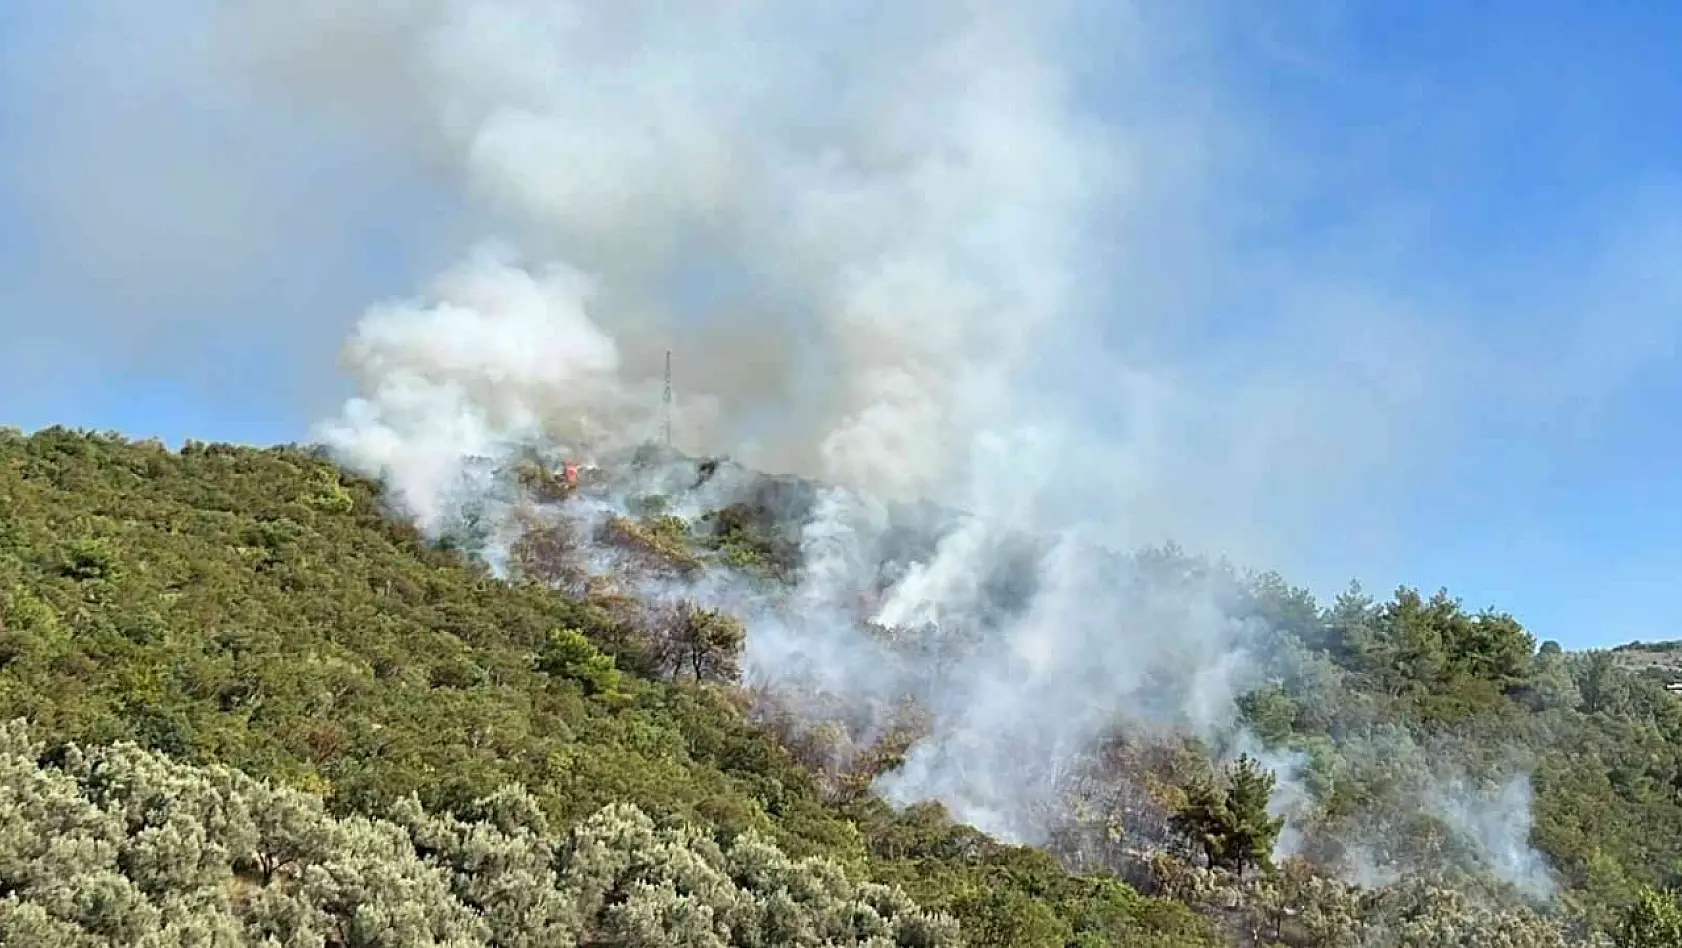 İznik'te orman yangını...Helikopter defalarca gölden su aldı